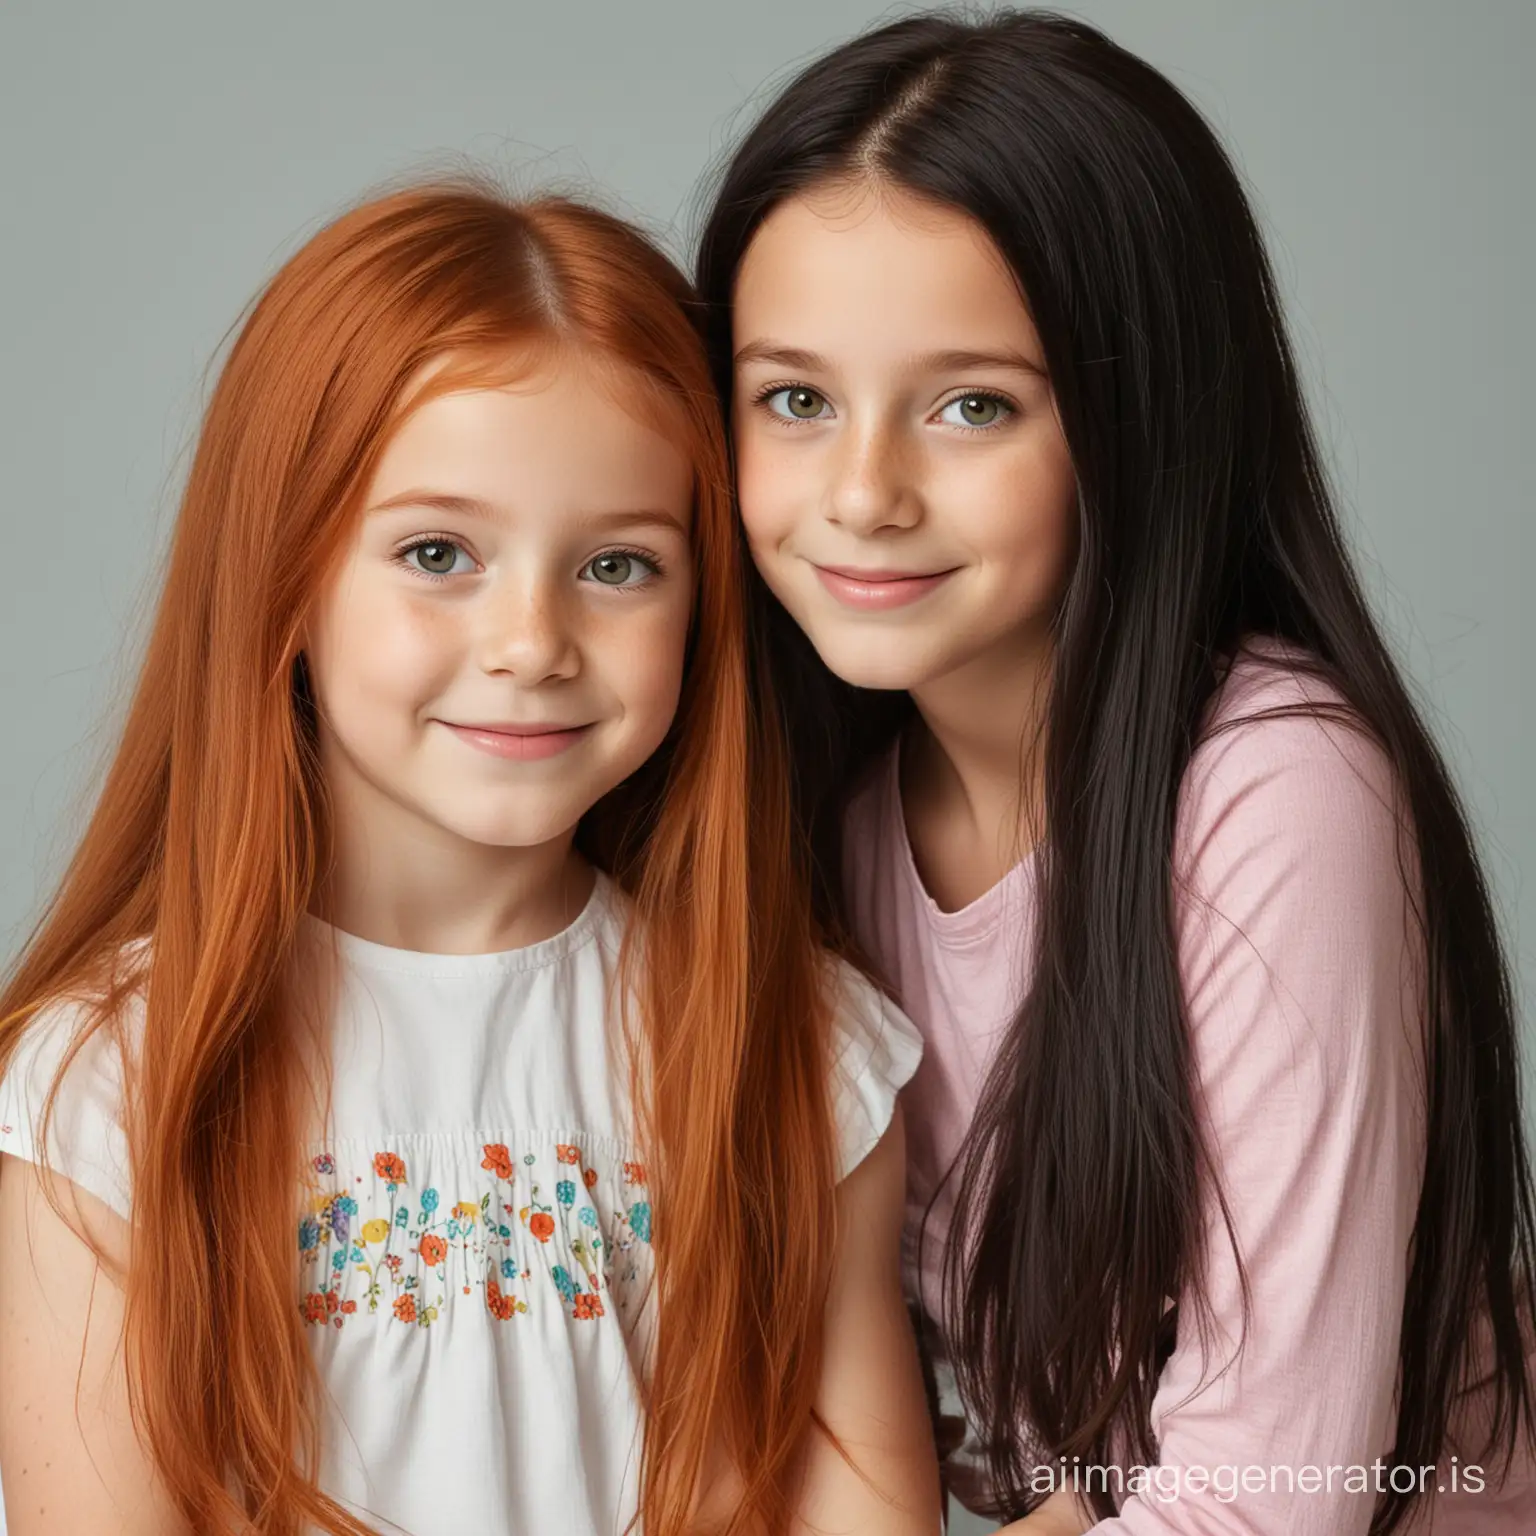 Une fille de 5 ans avec des cheveux roux long et sa sœur de 8 ans avec des cheveux noirs 